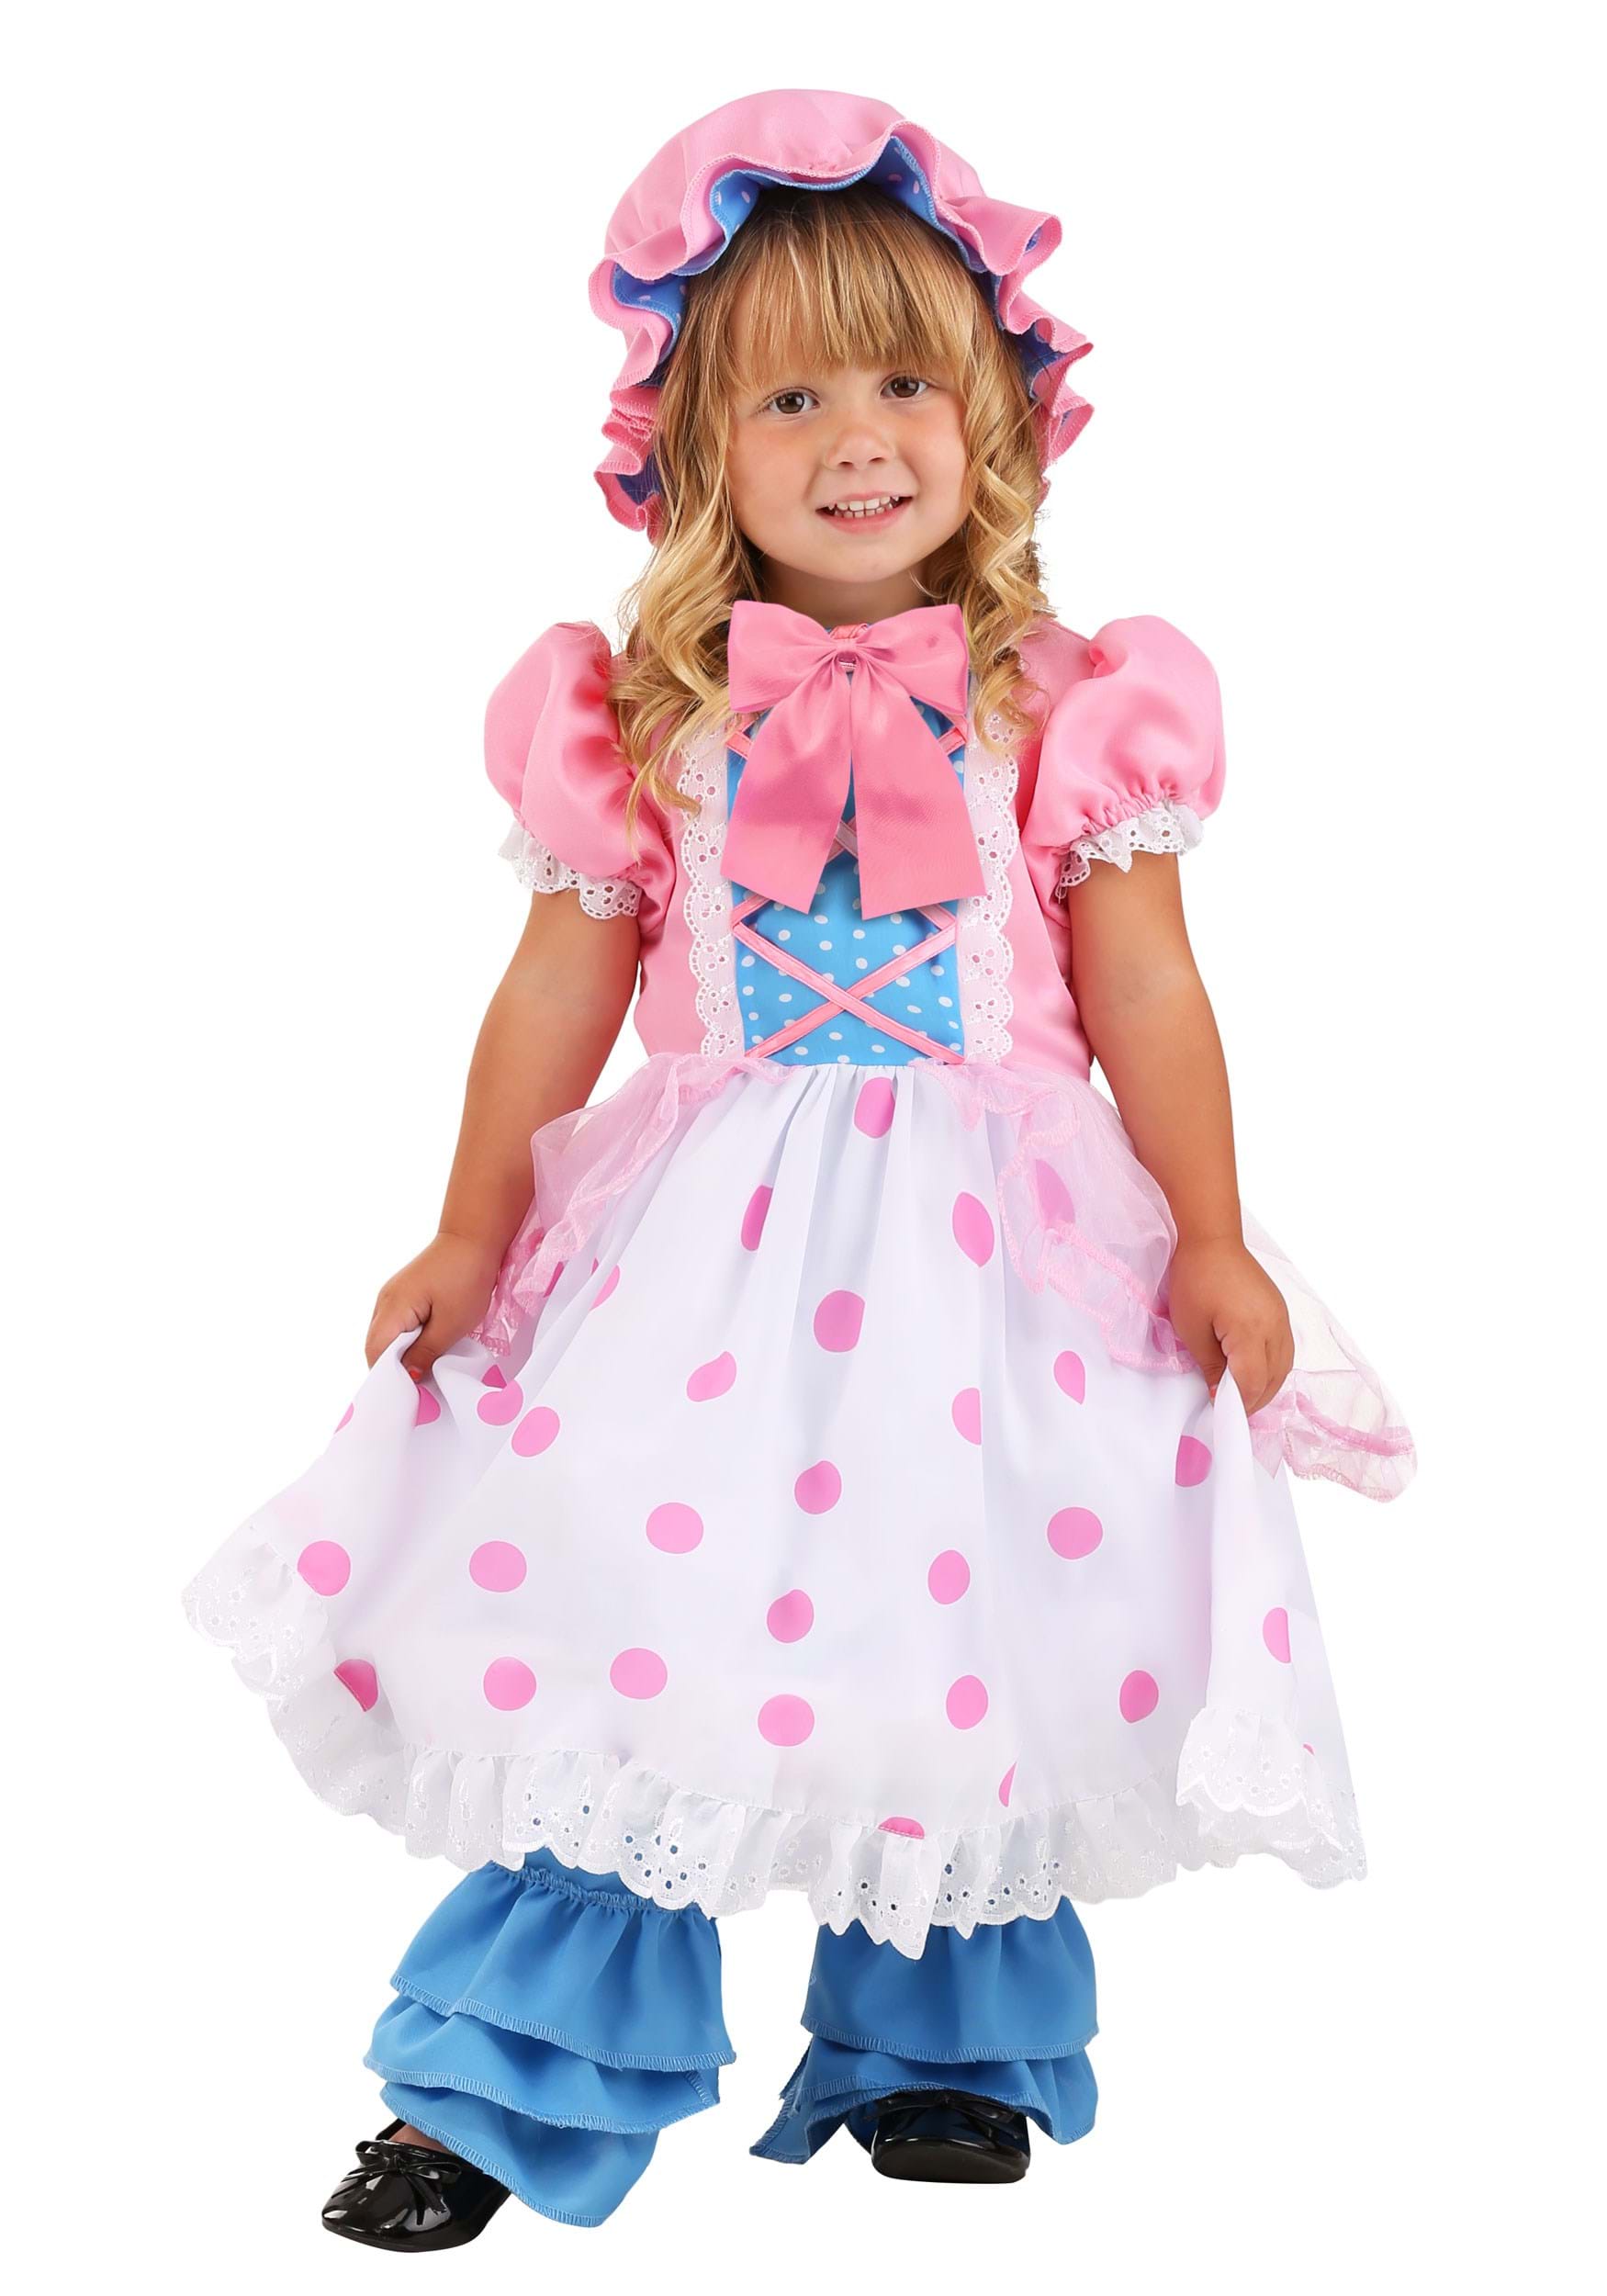 Photos - Fancy Dress FUN Costumes Bo Peep Toddler's Costume Blue/Pink/White FUN1401TD